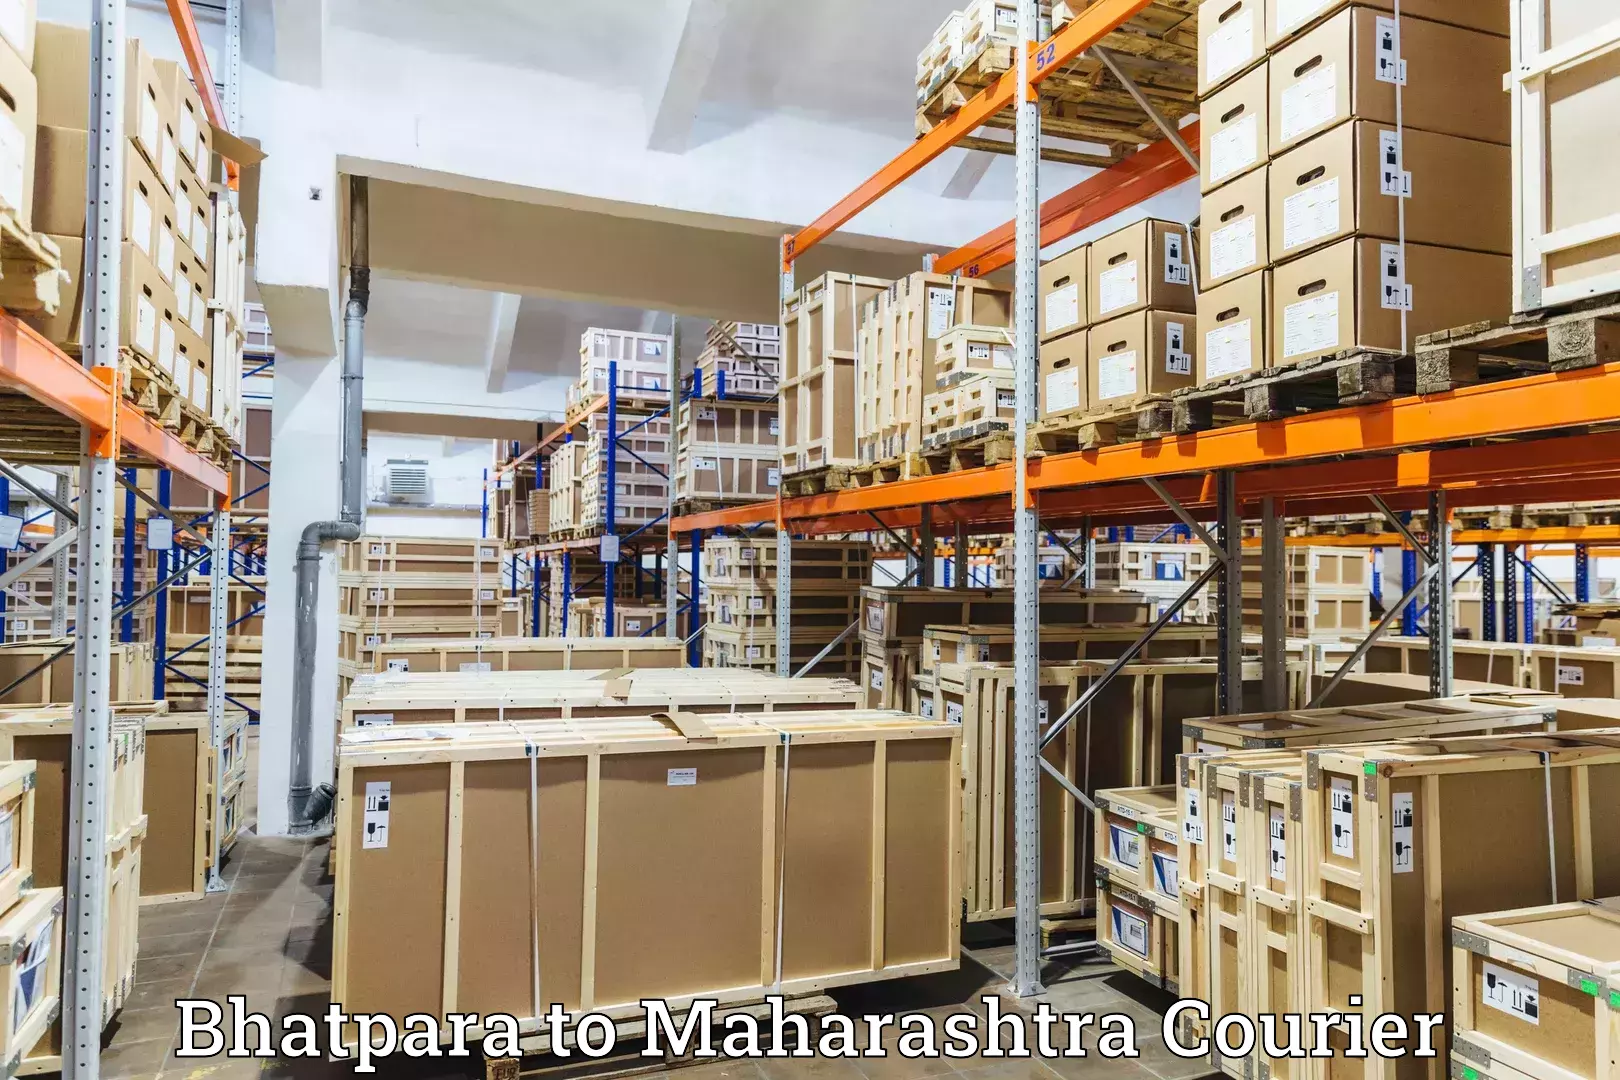 Secure shipping methods Bhatpara to Aurangabad